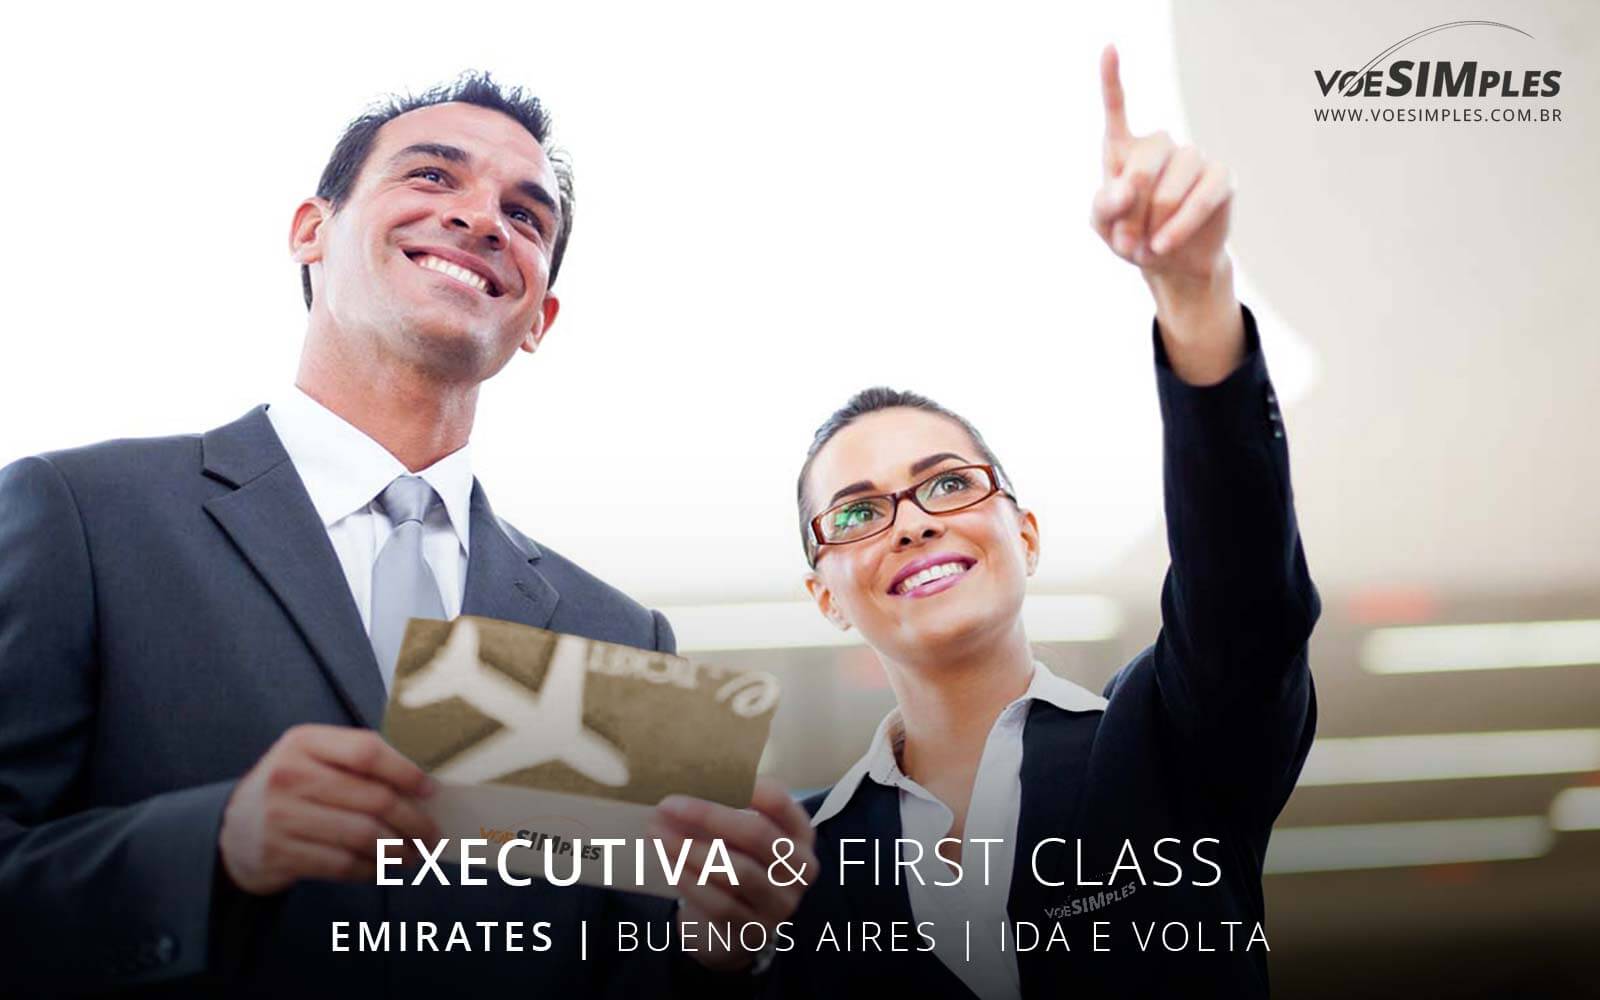 Passagem aérea classe executiva Emirates